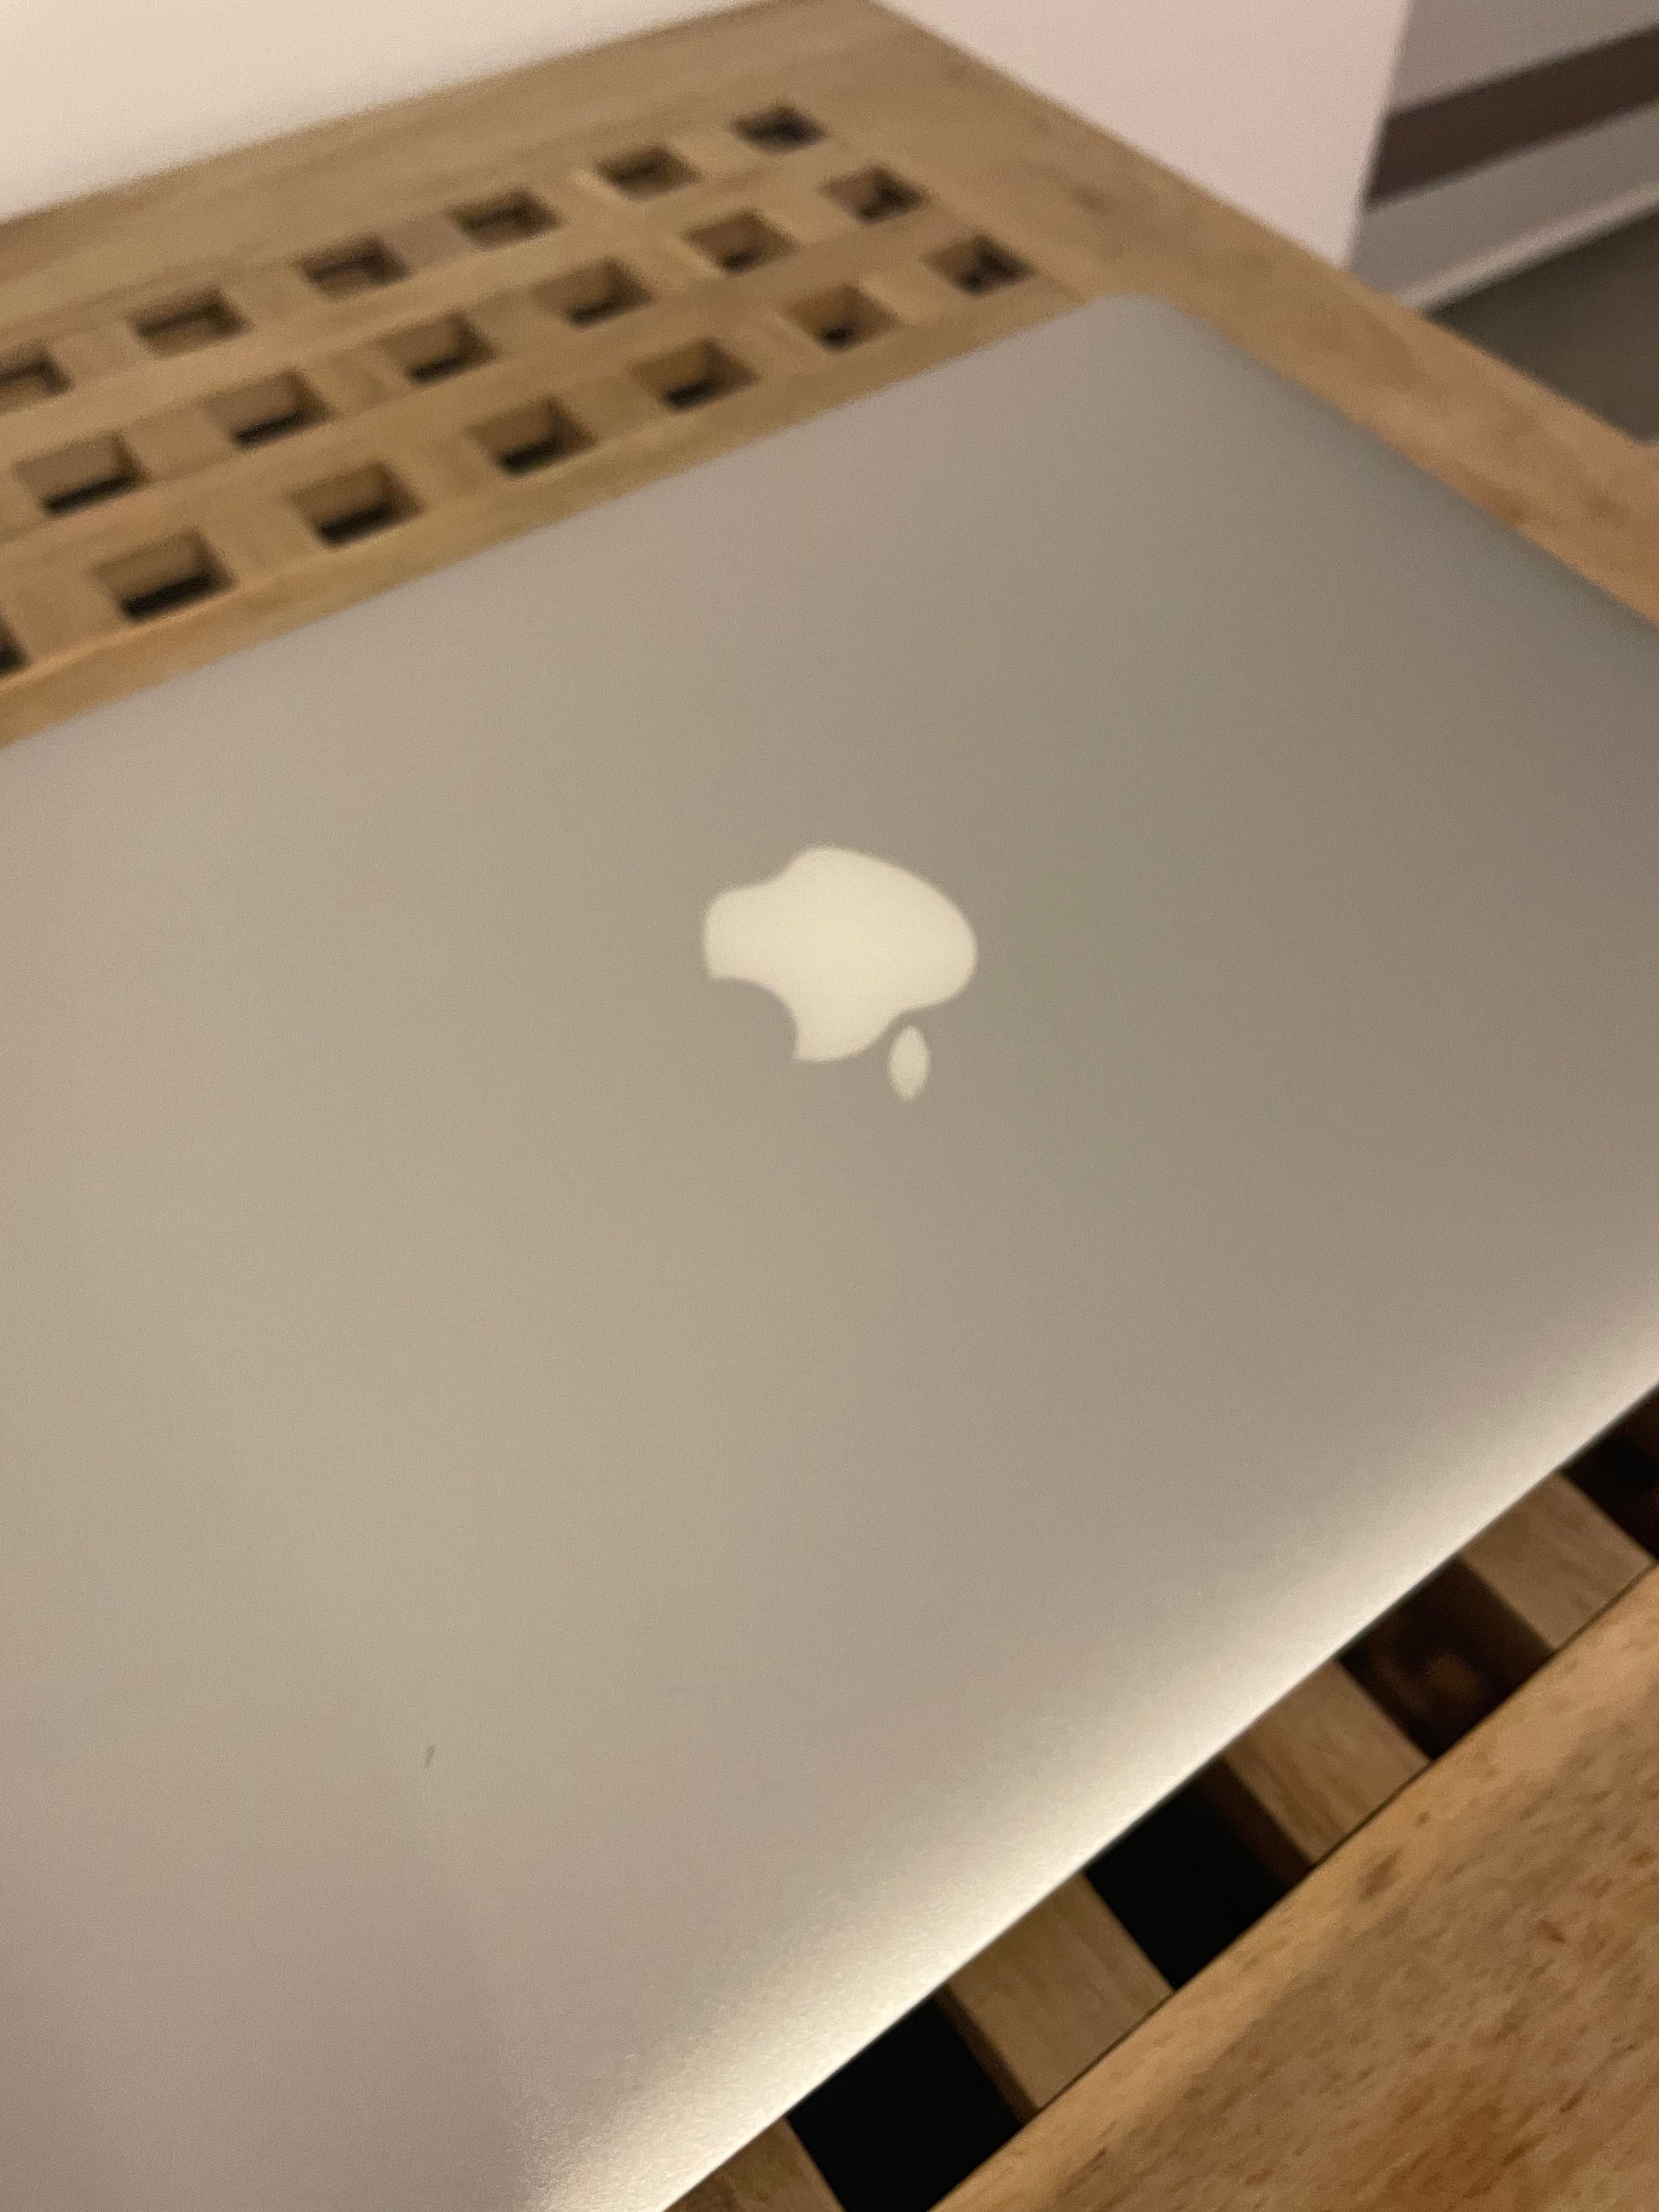 MacBook Air6 Silver